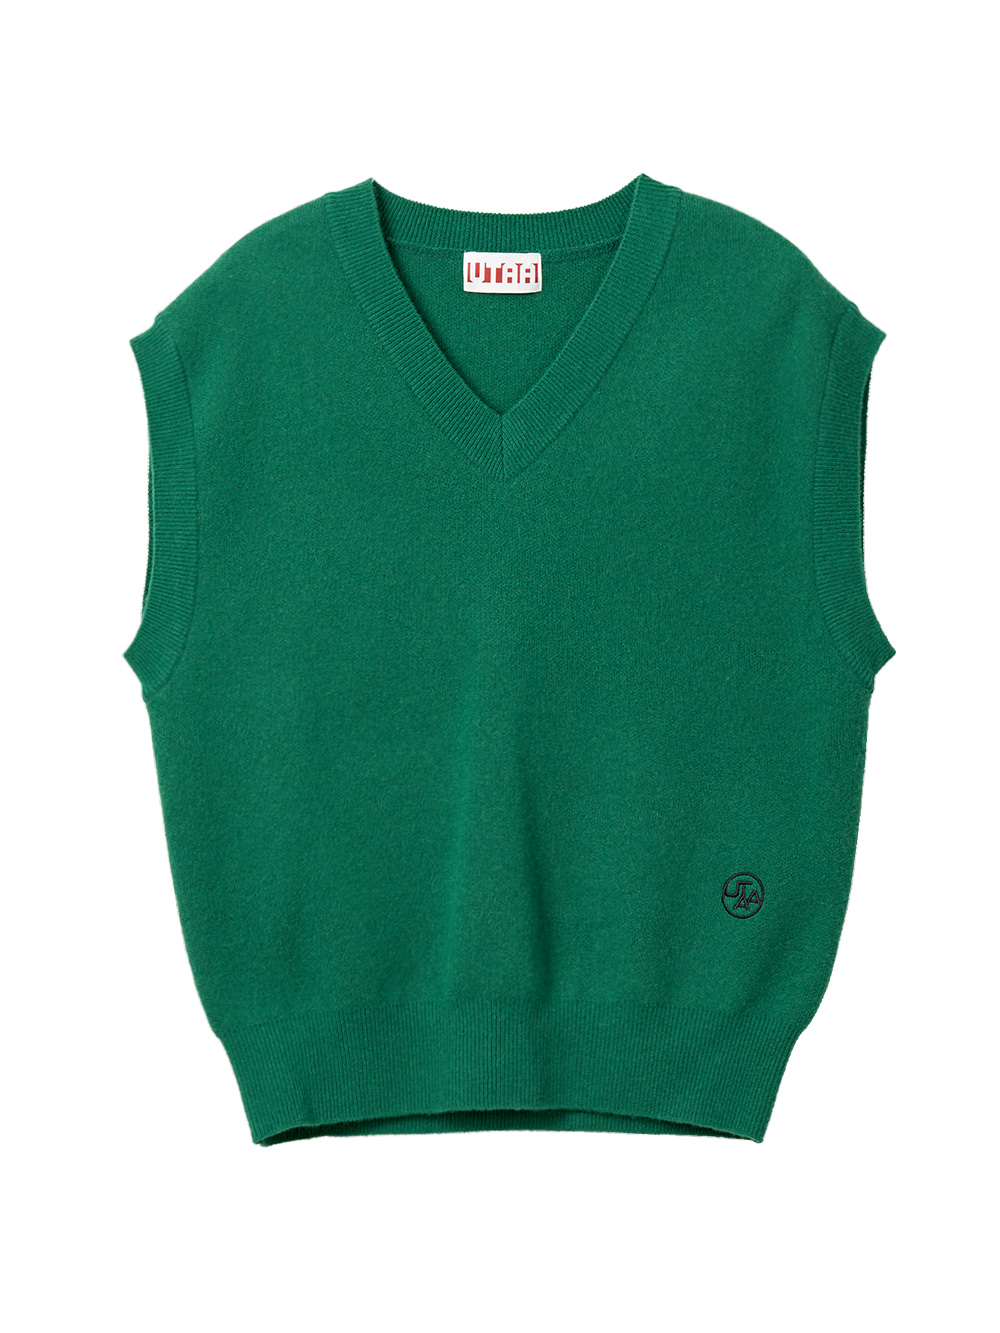 UTAA Palette Over Fit Knit Vest : Green (UB1KVF100GN)